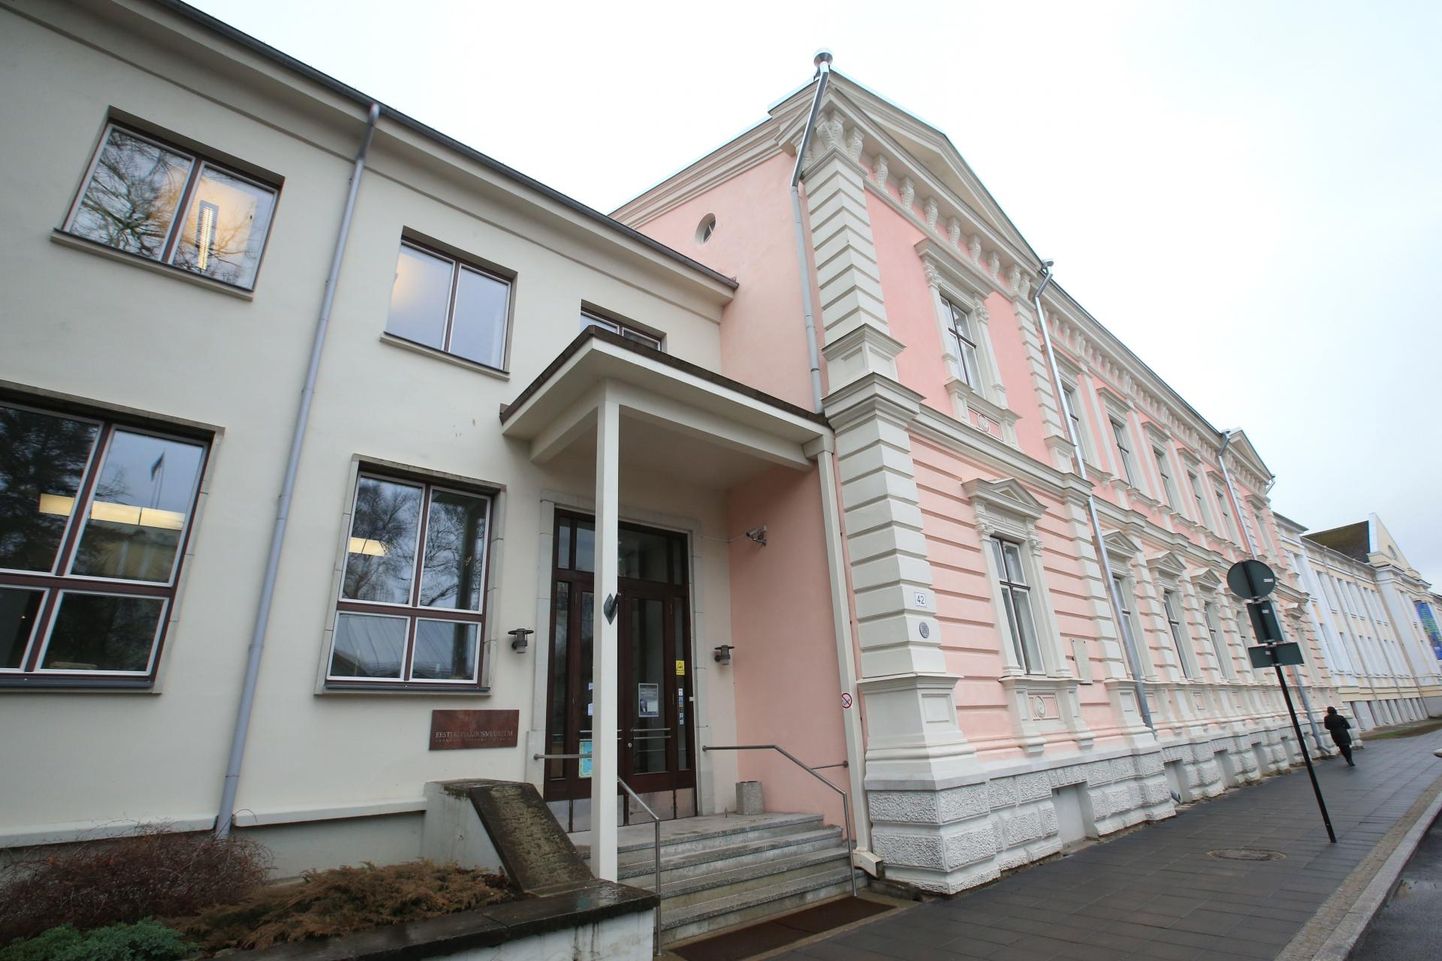 Eesti kirjandusmuuseumis tegeldakse koroonapärimuse kogumisega.